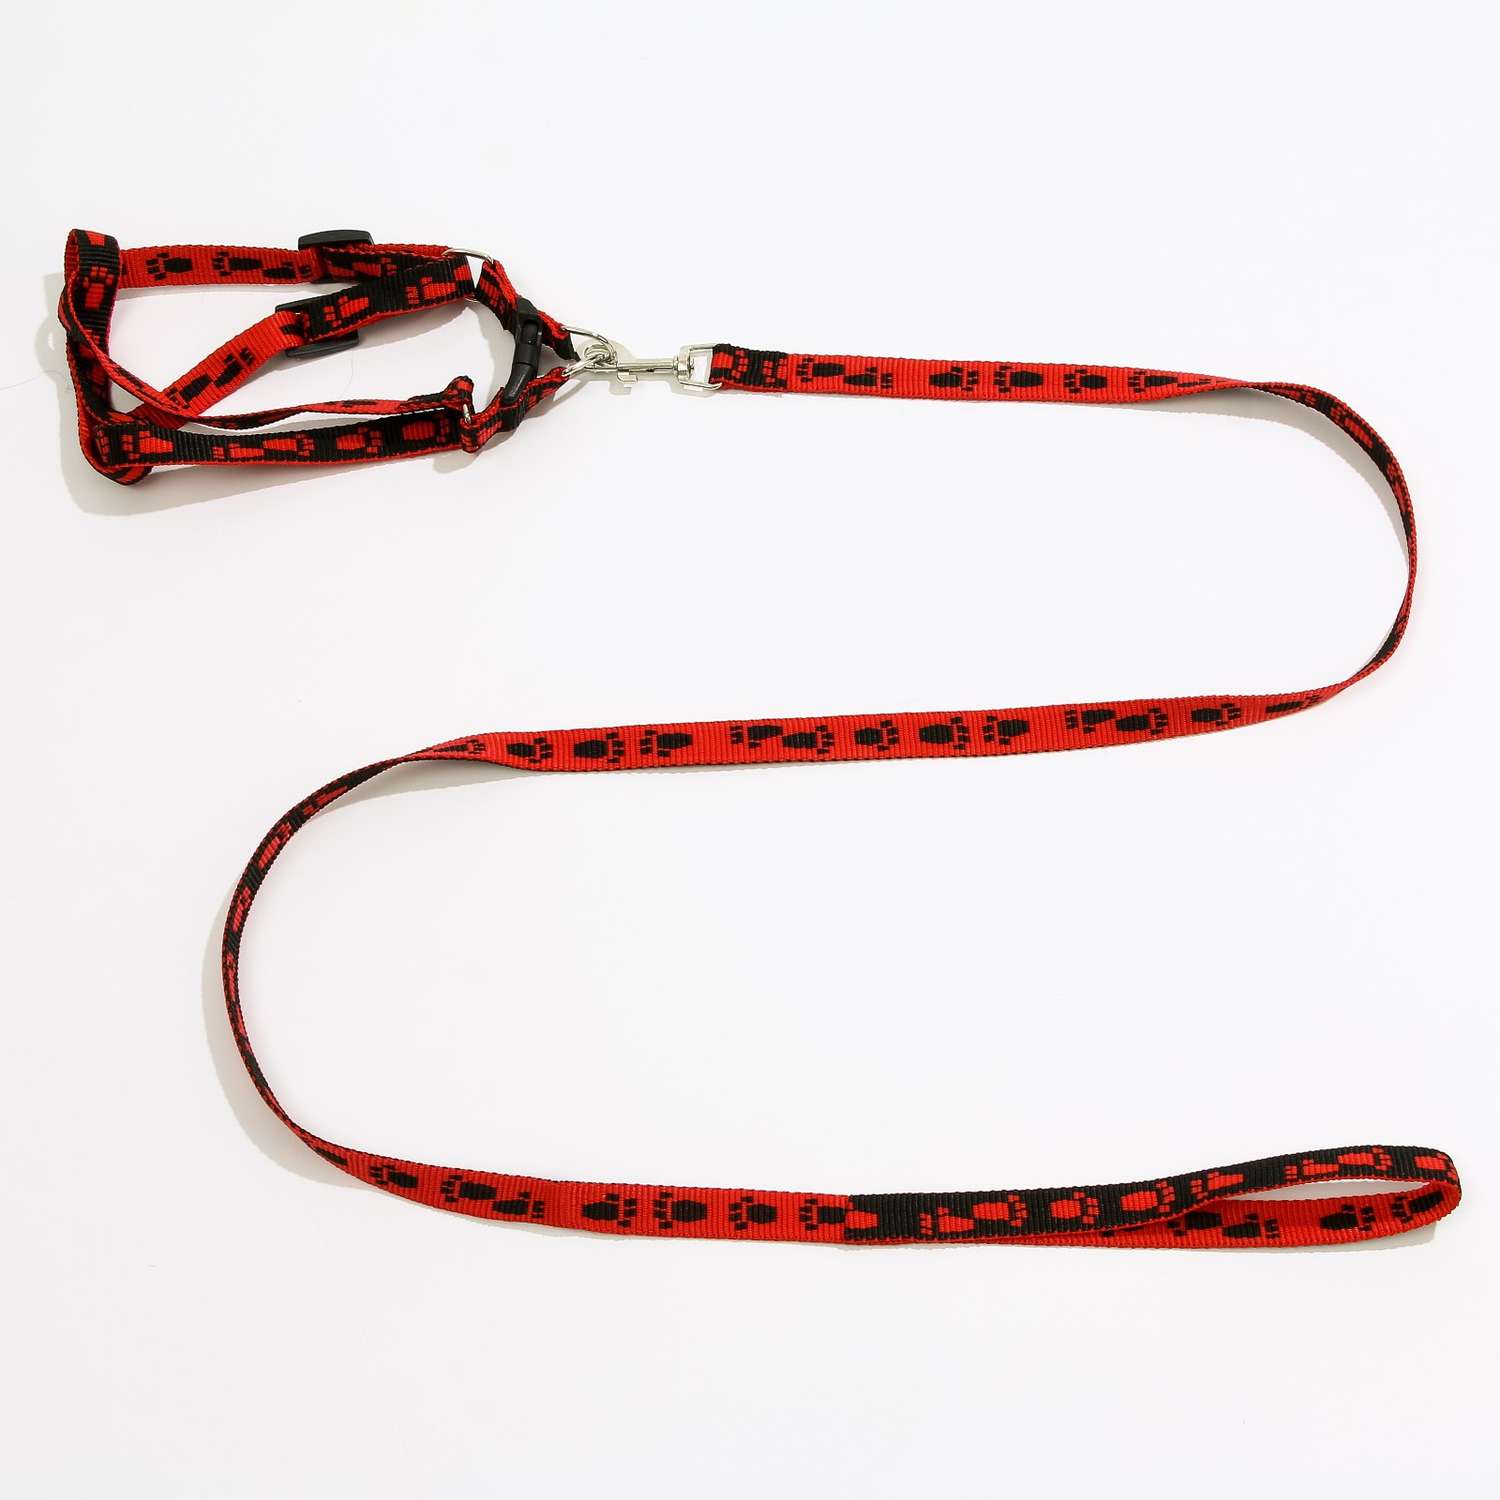 Комплект поводок и шлейка Пижон Большая лапа ширина 1.5 см поводок 120 см шлейка 28-42 см красно-чёрный - фото 1